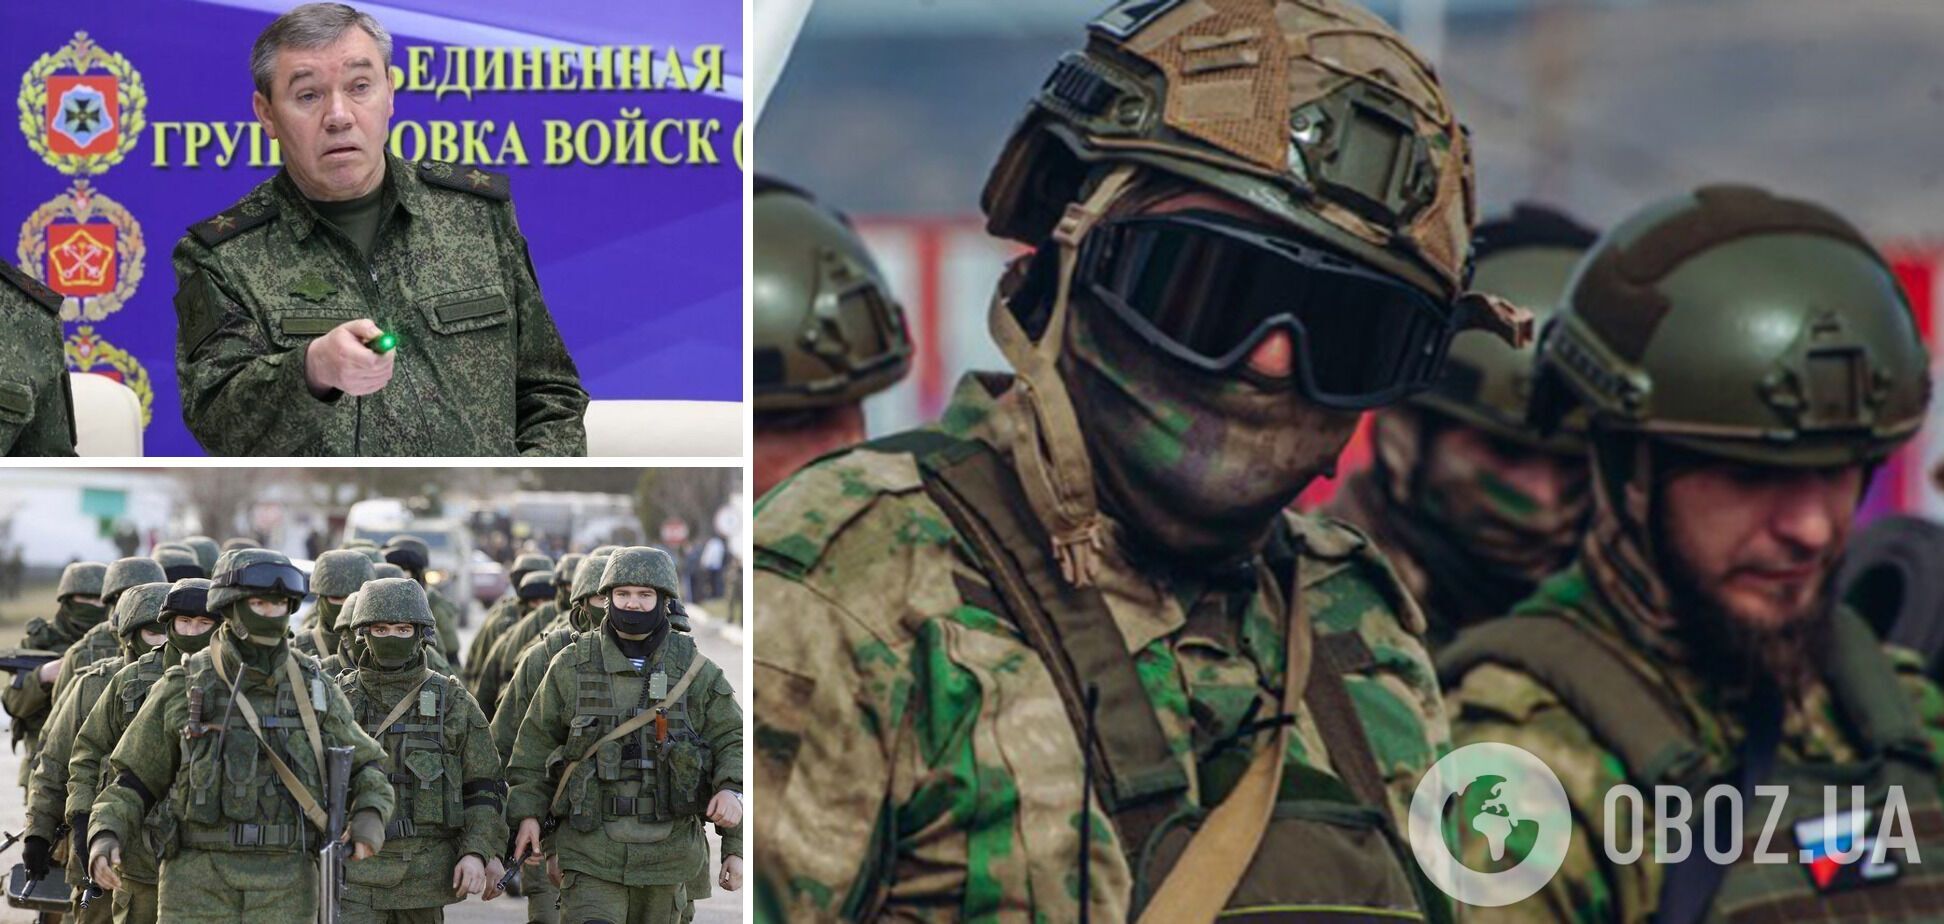 Герасимов спробував "реформувати" армію РФ, заборонивши бороди: це назвали фарсом – розвідка Британії